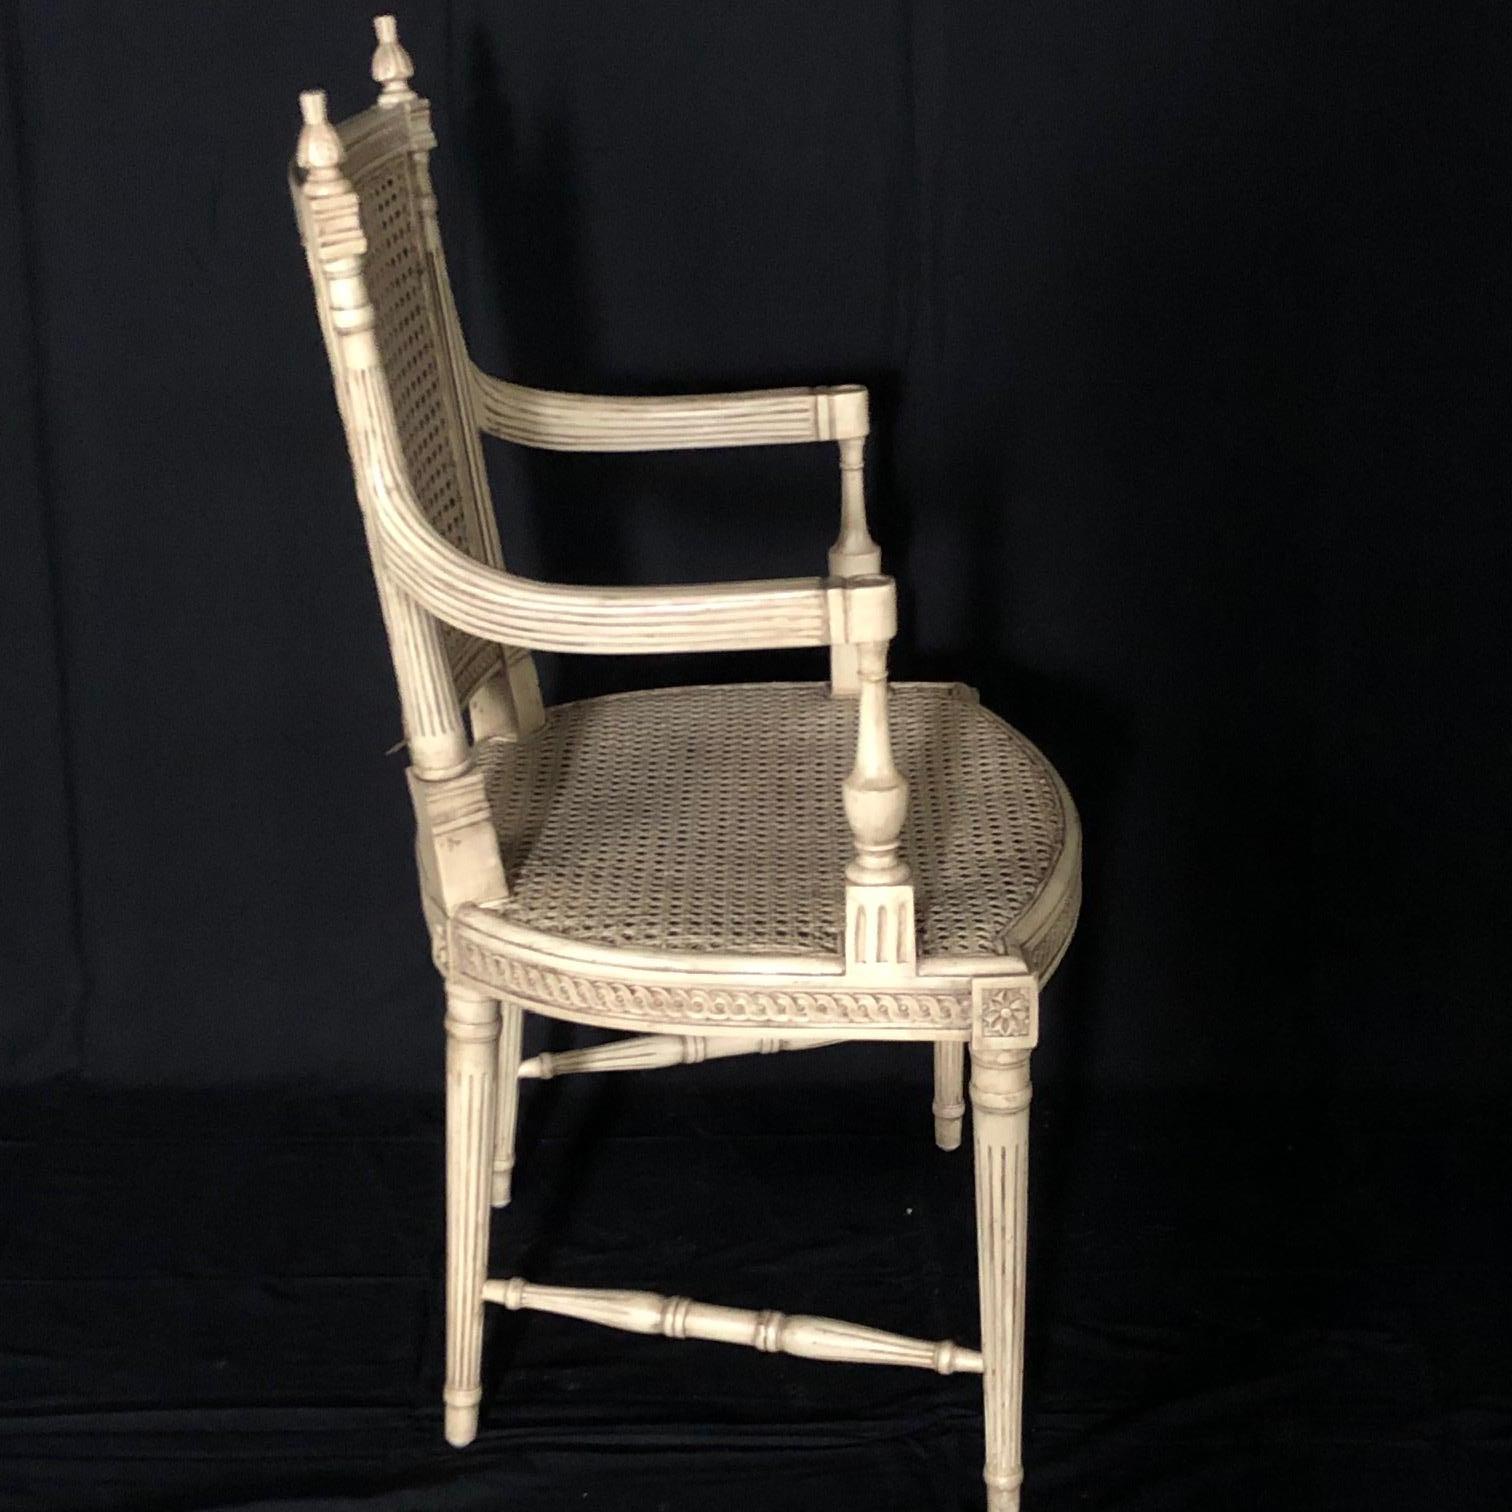 Beau fauteuil de style Louis XVI peint en ivoire avec double cannage, en très bon état ! Les pieds anglés et les volutes complexes du tablier et du haut des dossiers sont complétés par des fleurons sculptés. 
#5109.